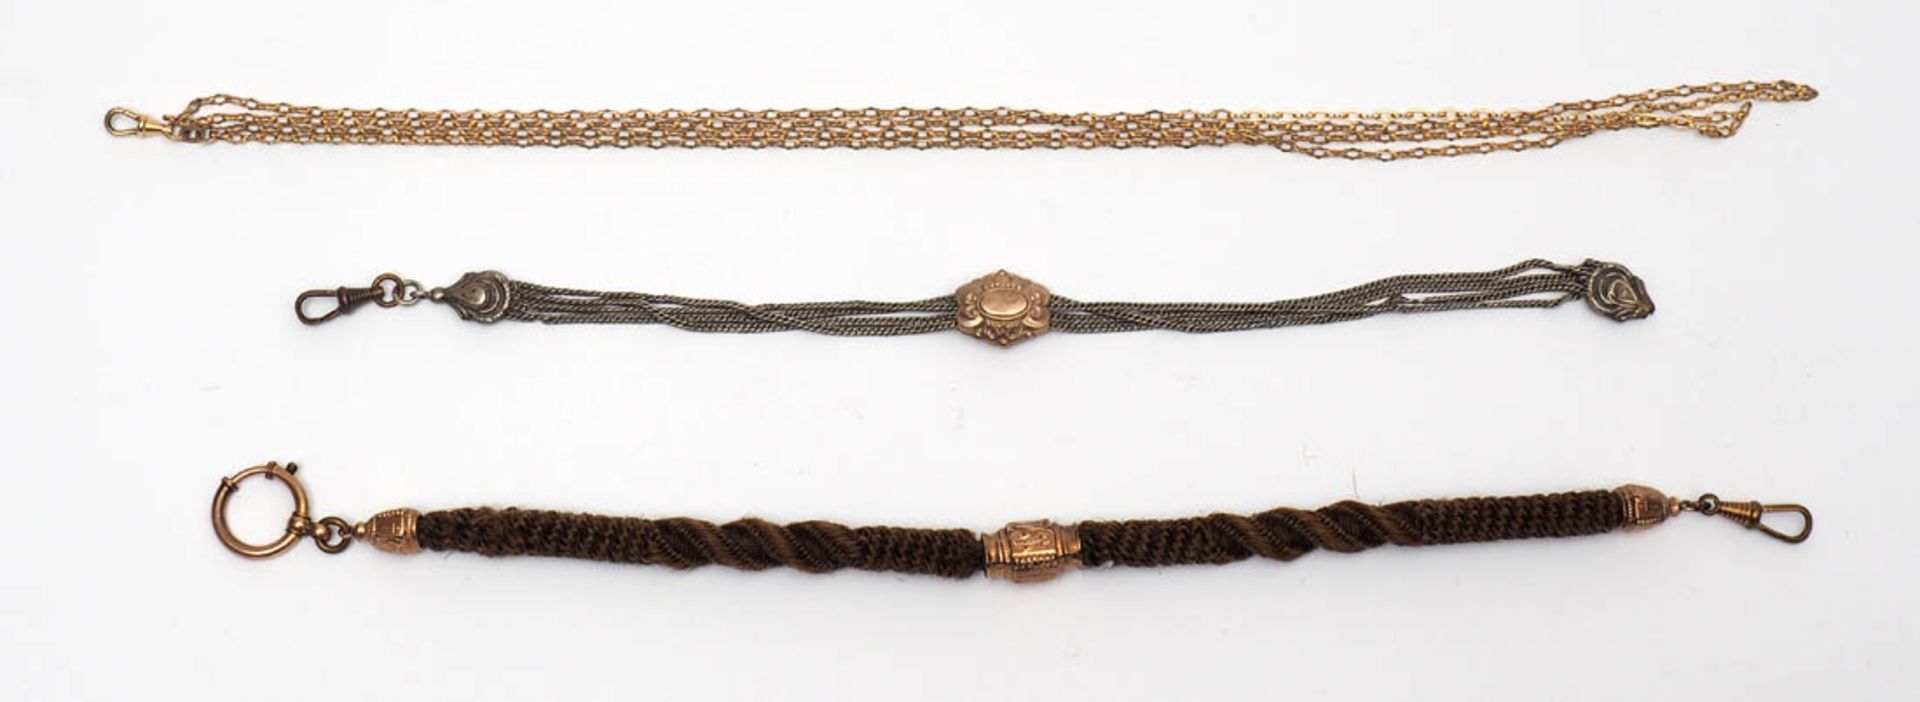 Drei Uhrenketten, 19.Jhdt. Eine aus geflochtenem Haar mit feuervergoldeten Schiebern, eine aus - Bild 2 aus 3